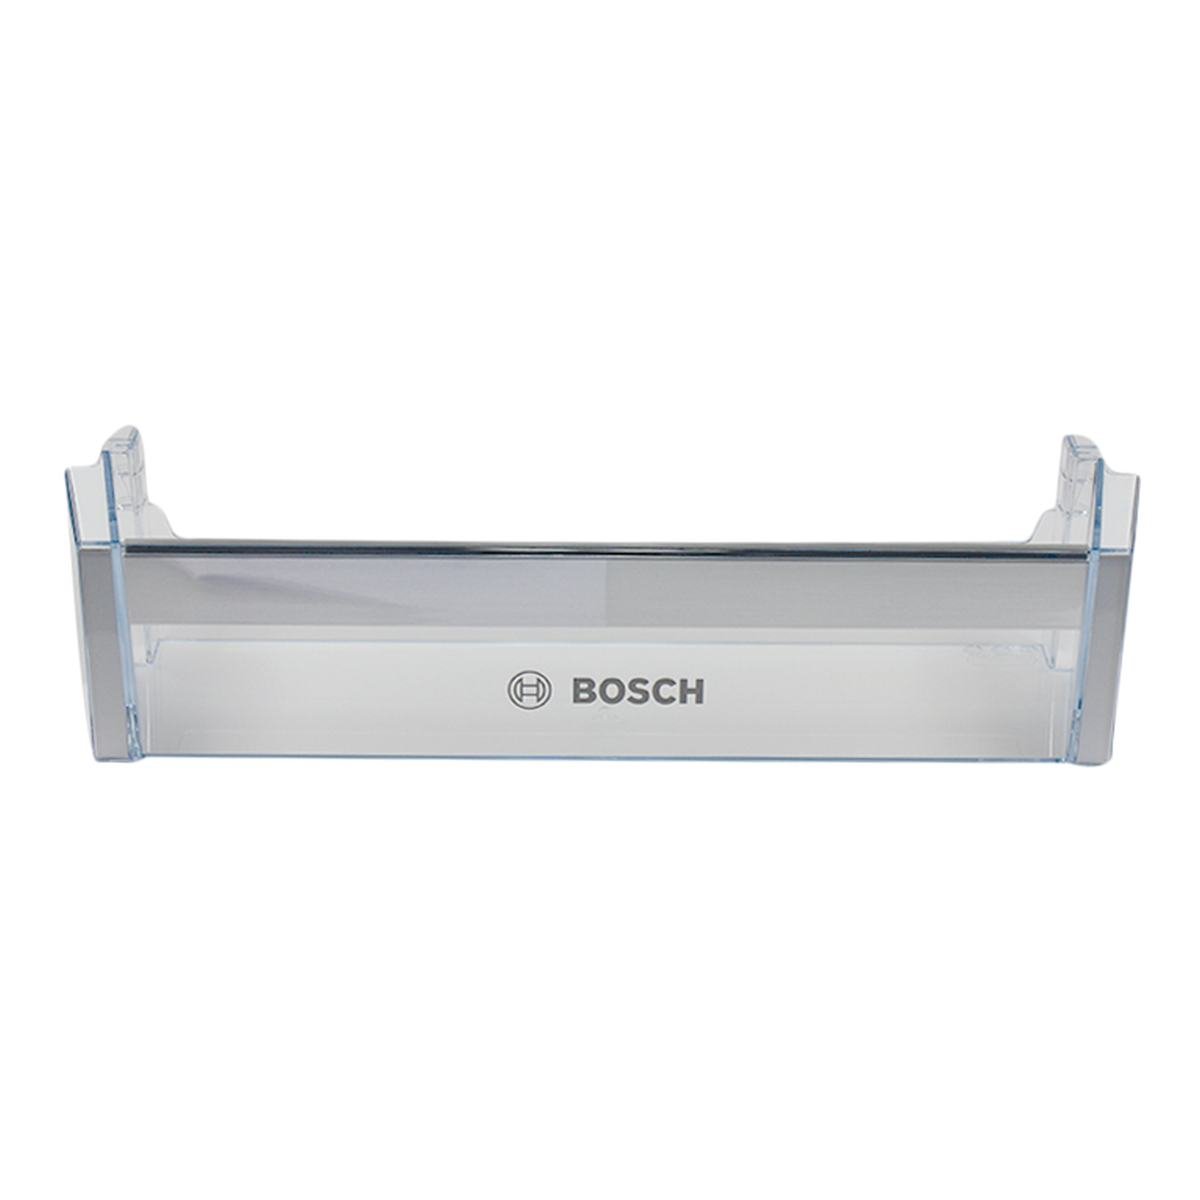 Dørhylde H:98mm med Bosch logo